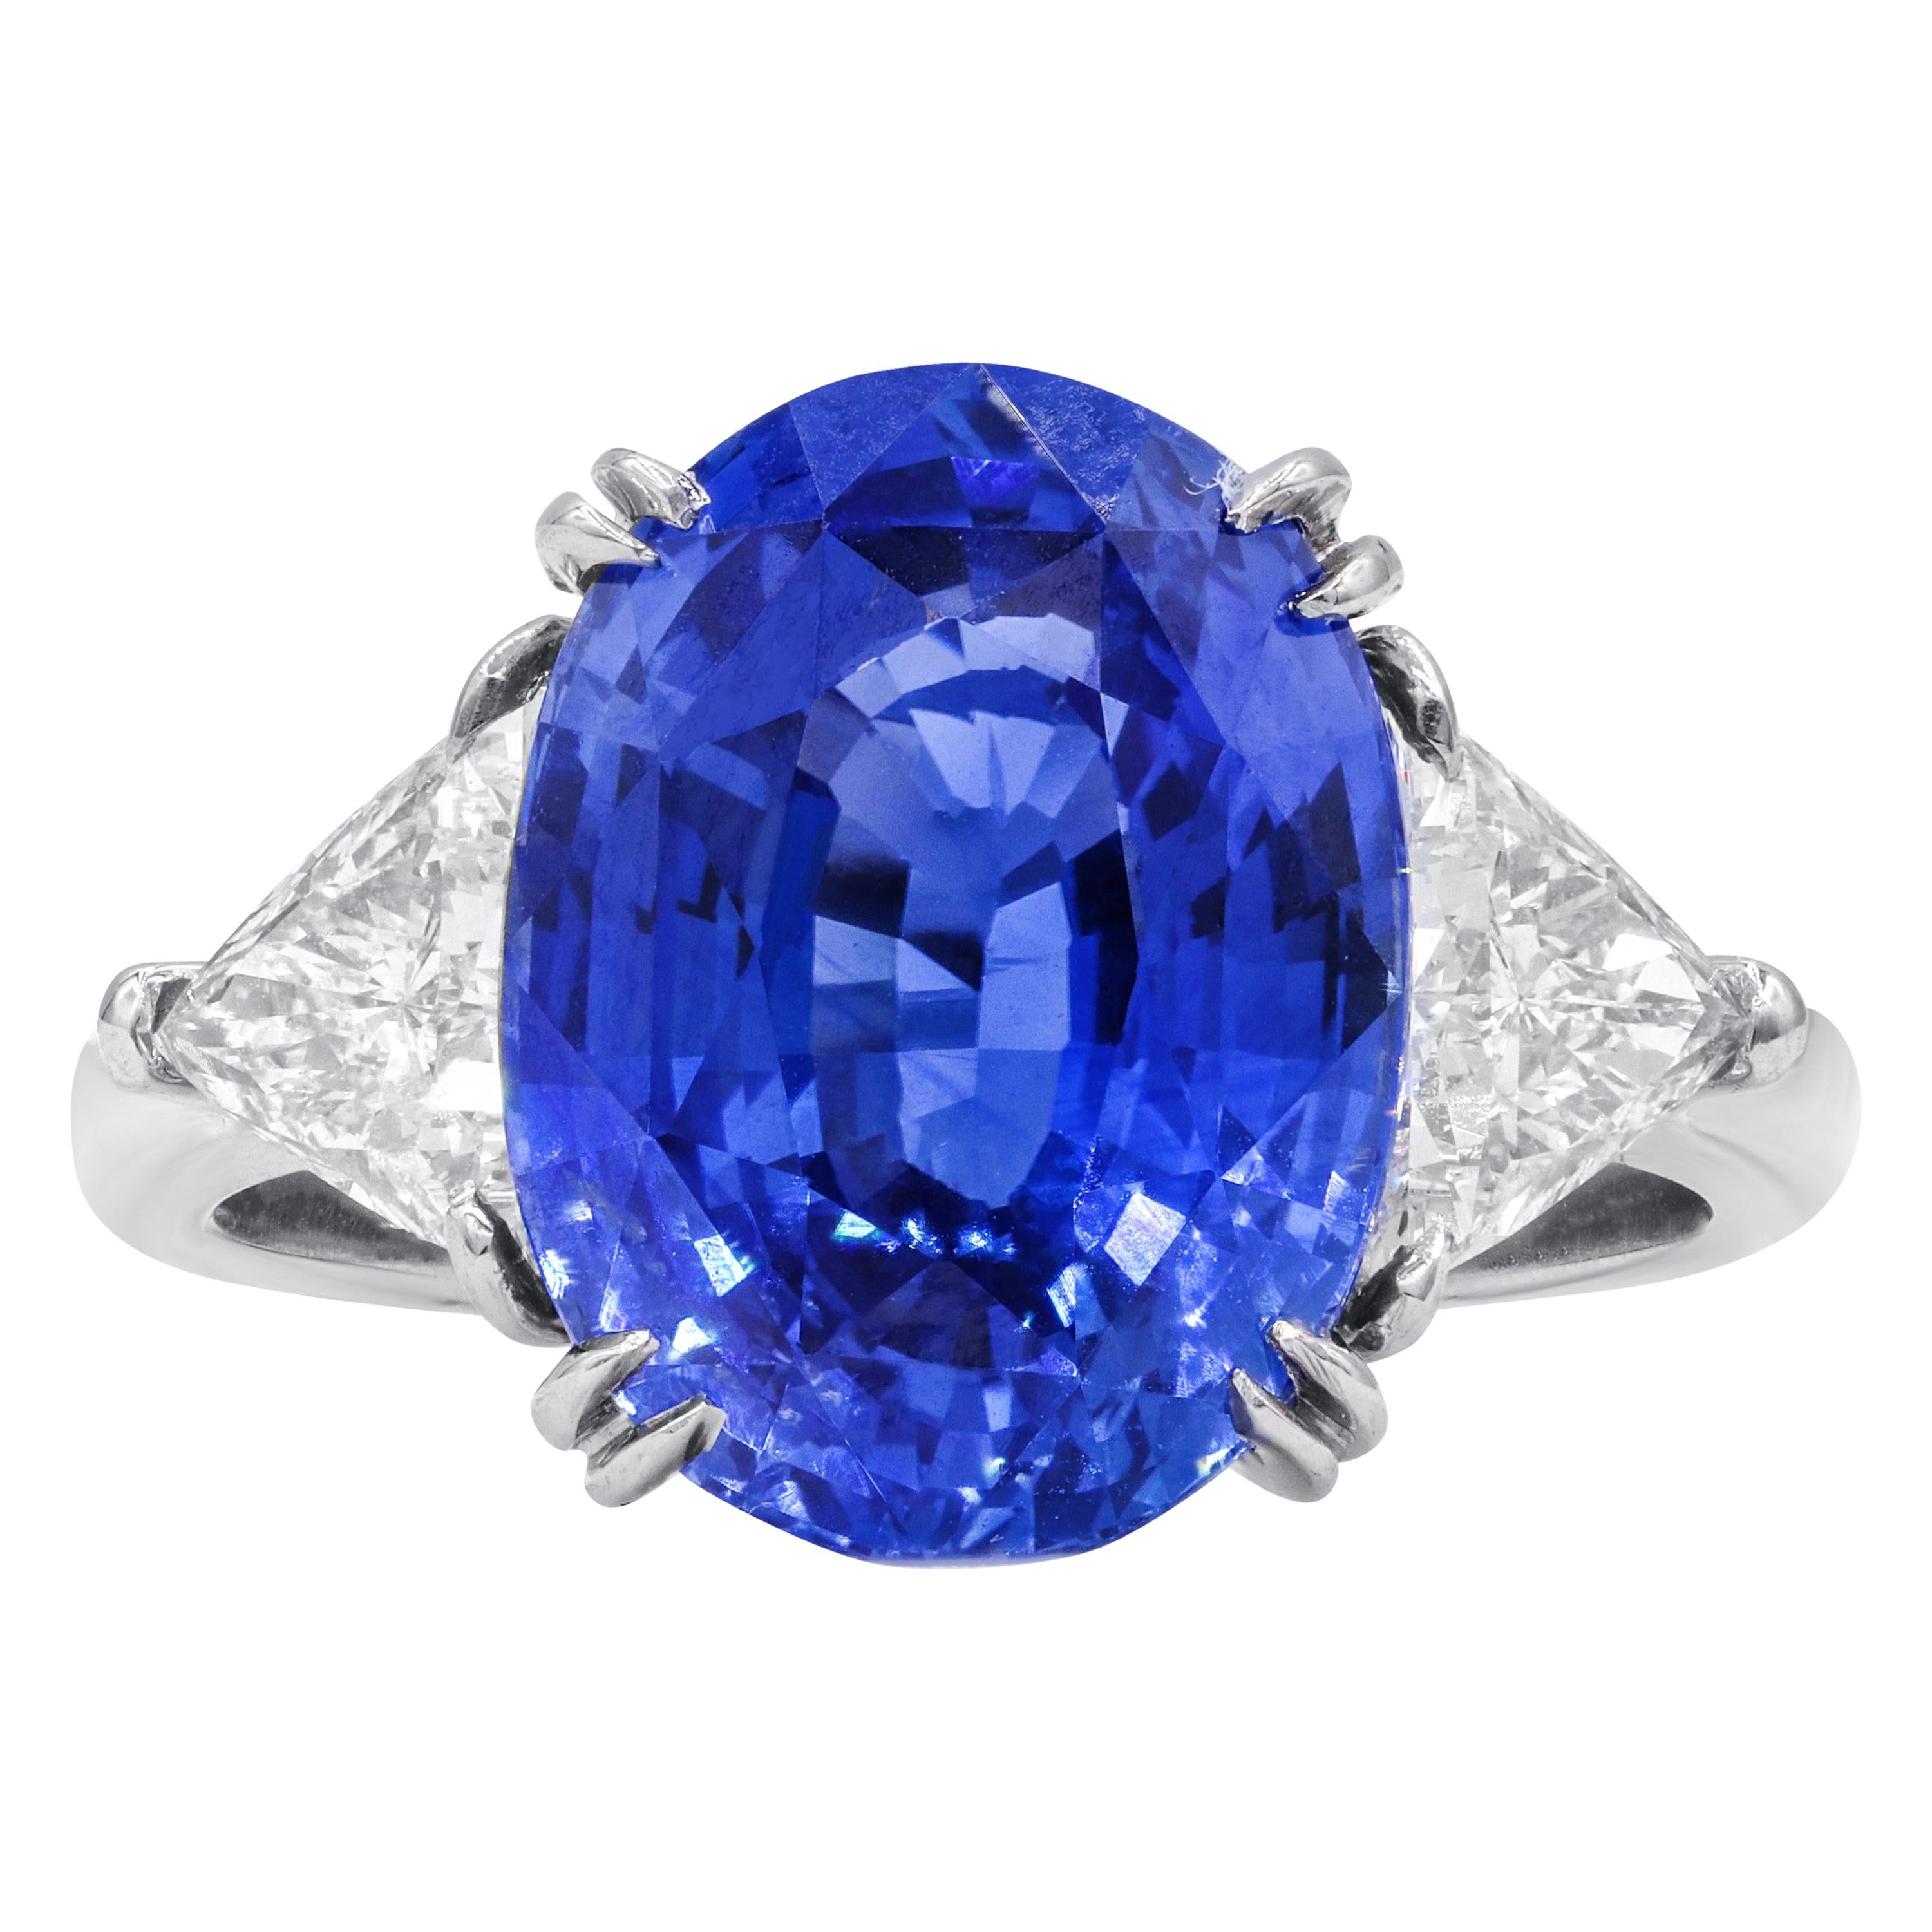  7.48 Carat Sapphire  Diamond Ring